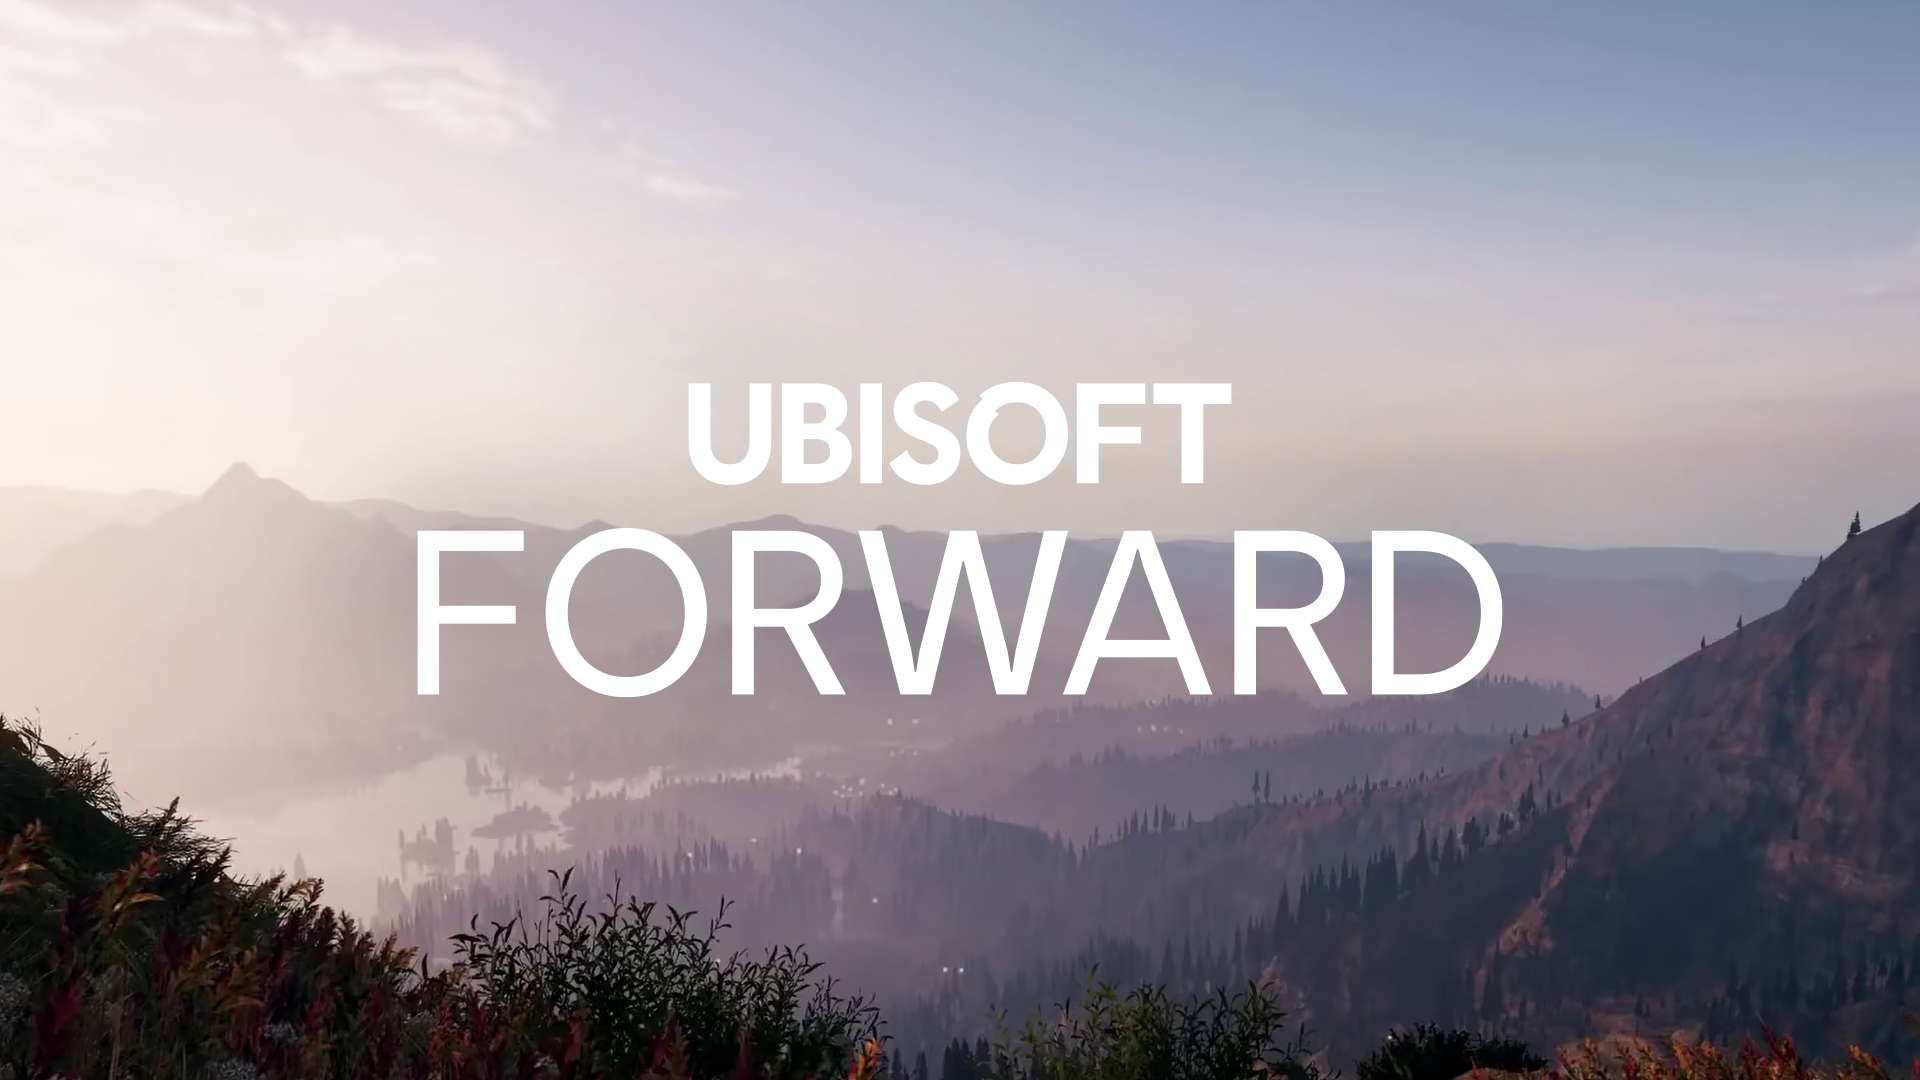 Ubisoft Forward promotion